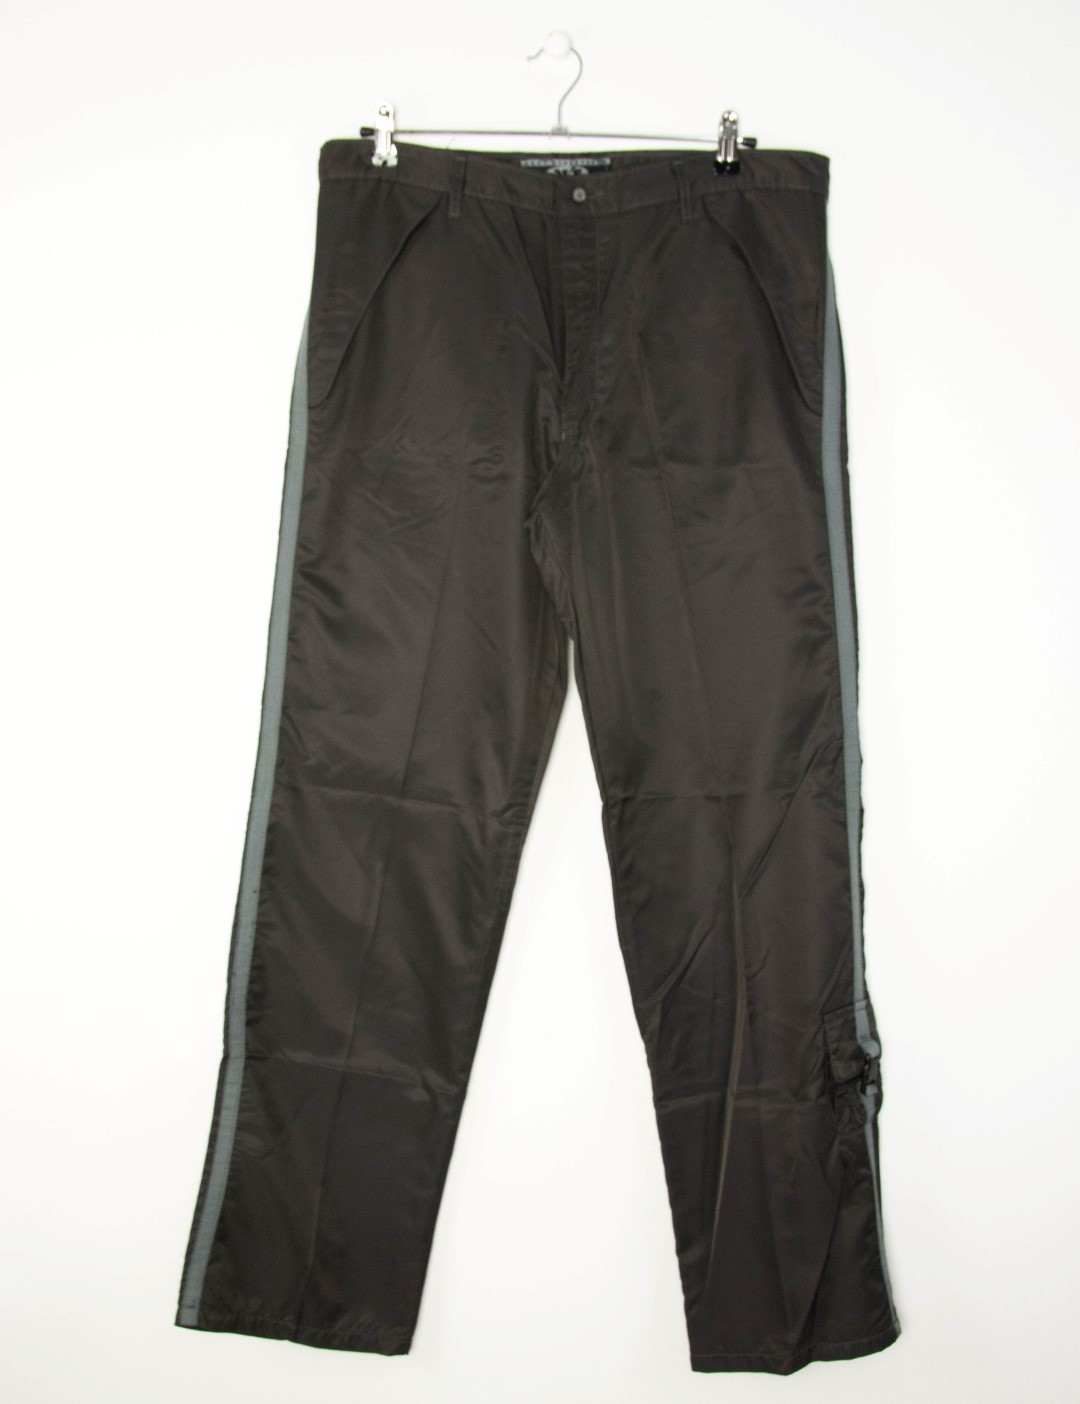 Ανδρικό ανθρακί παντελόνι αδιάβροχο 012029F